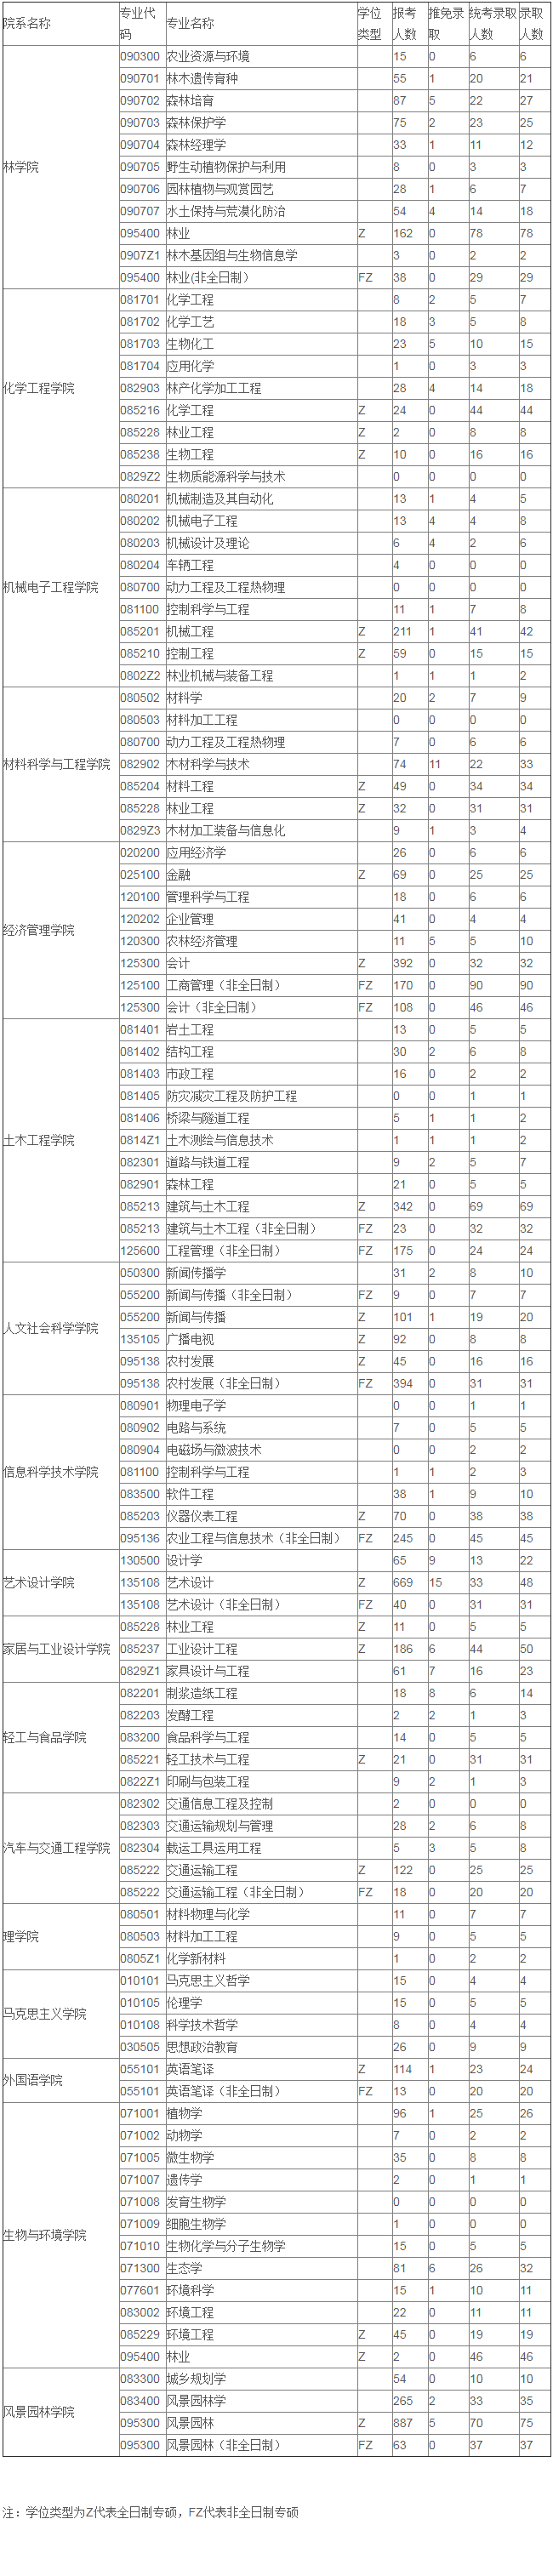 南京林业大学2019年硕士研究生报考录取比例